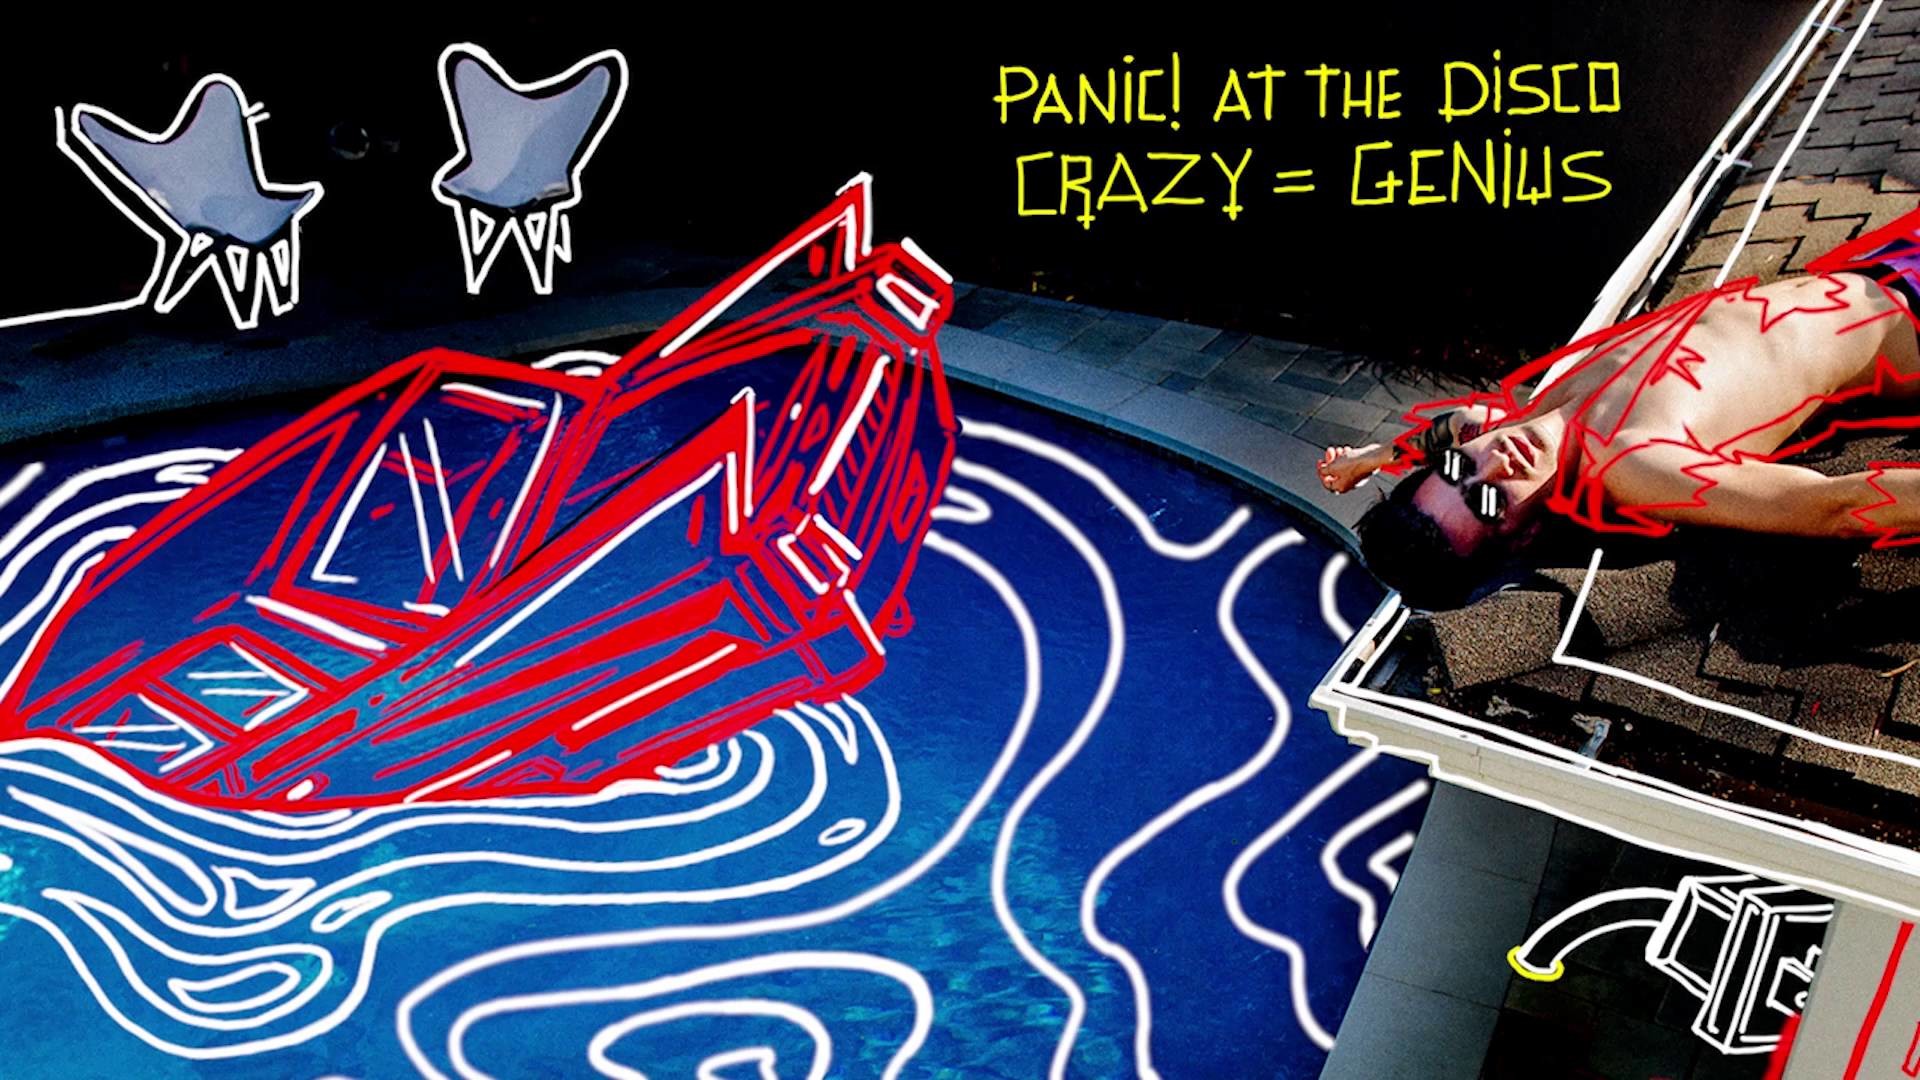 Video of Panic At The Disco Crazy Genius Audio